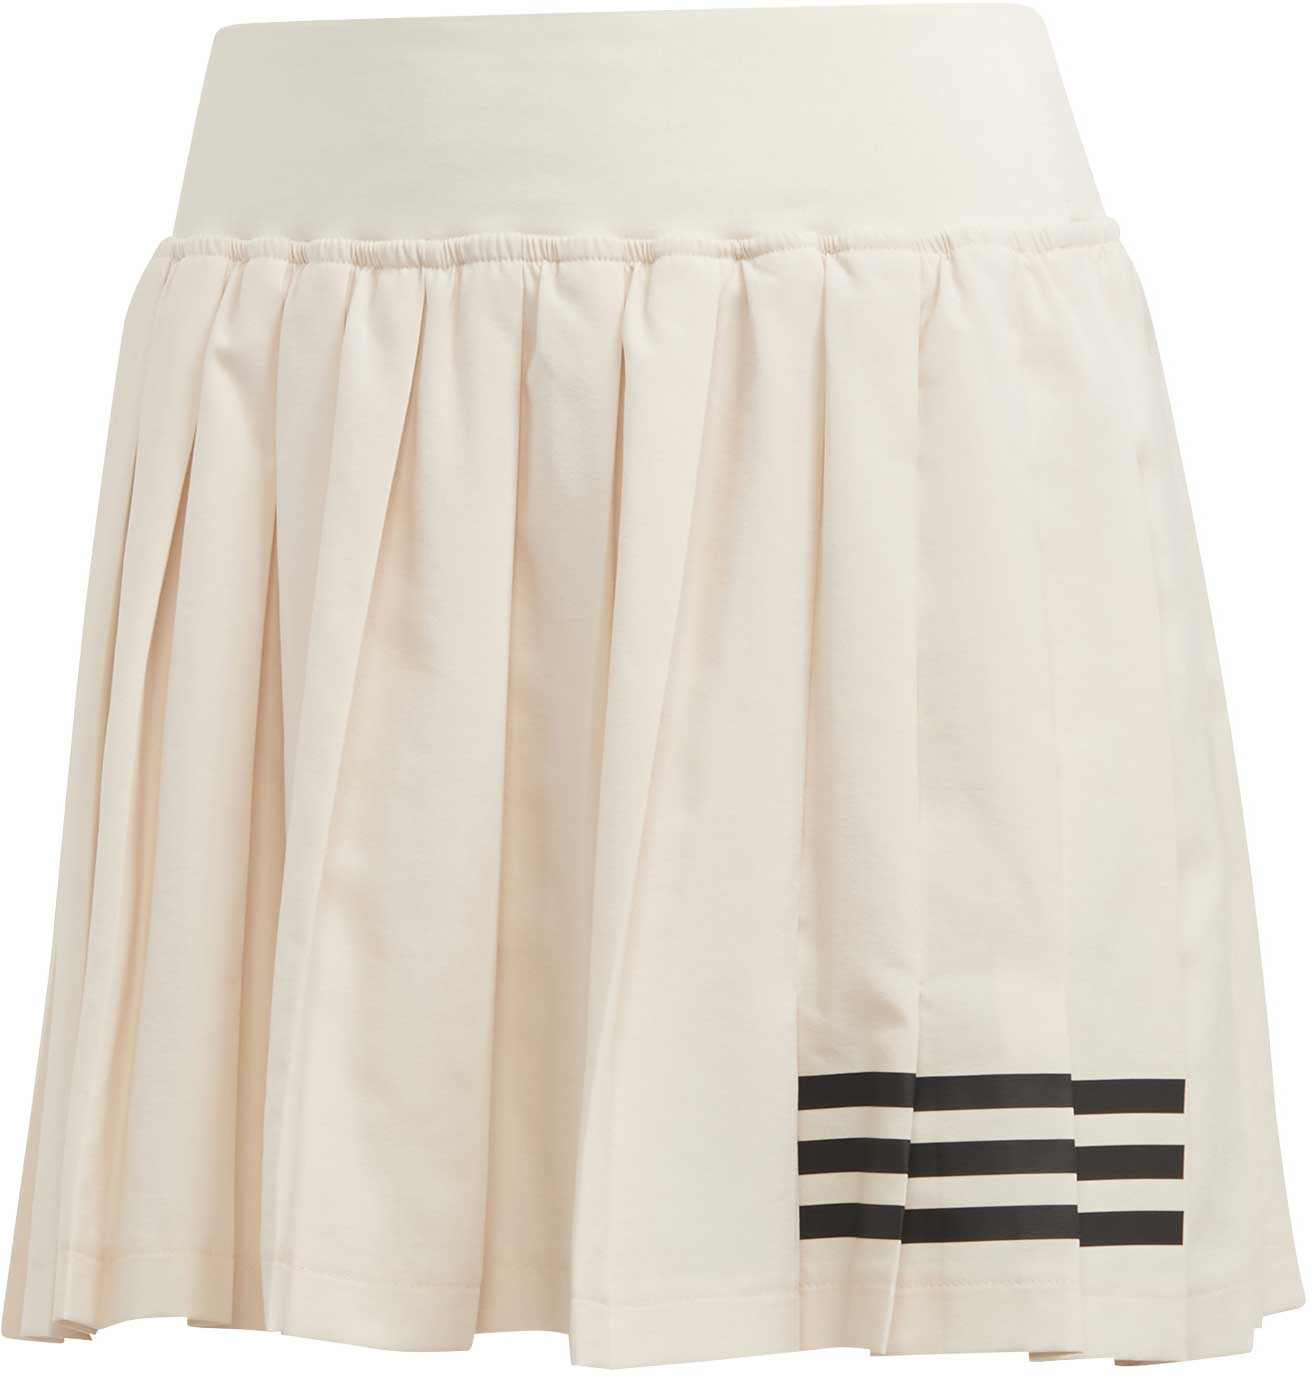 Women's tennis skirt